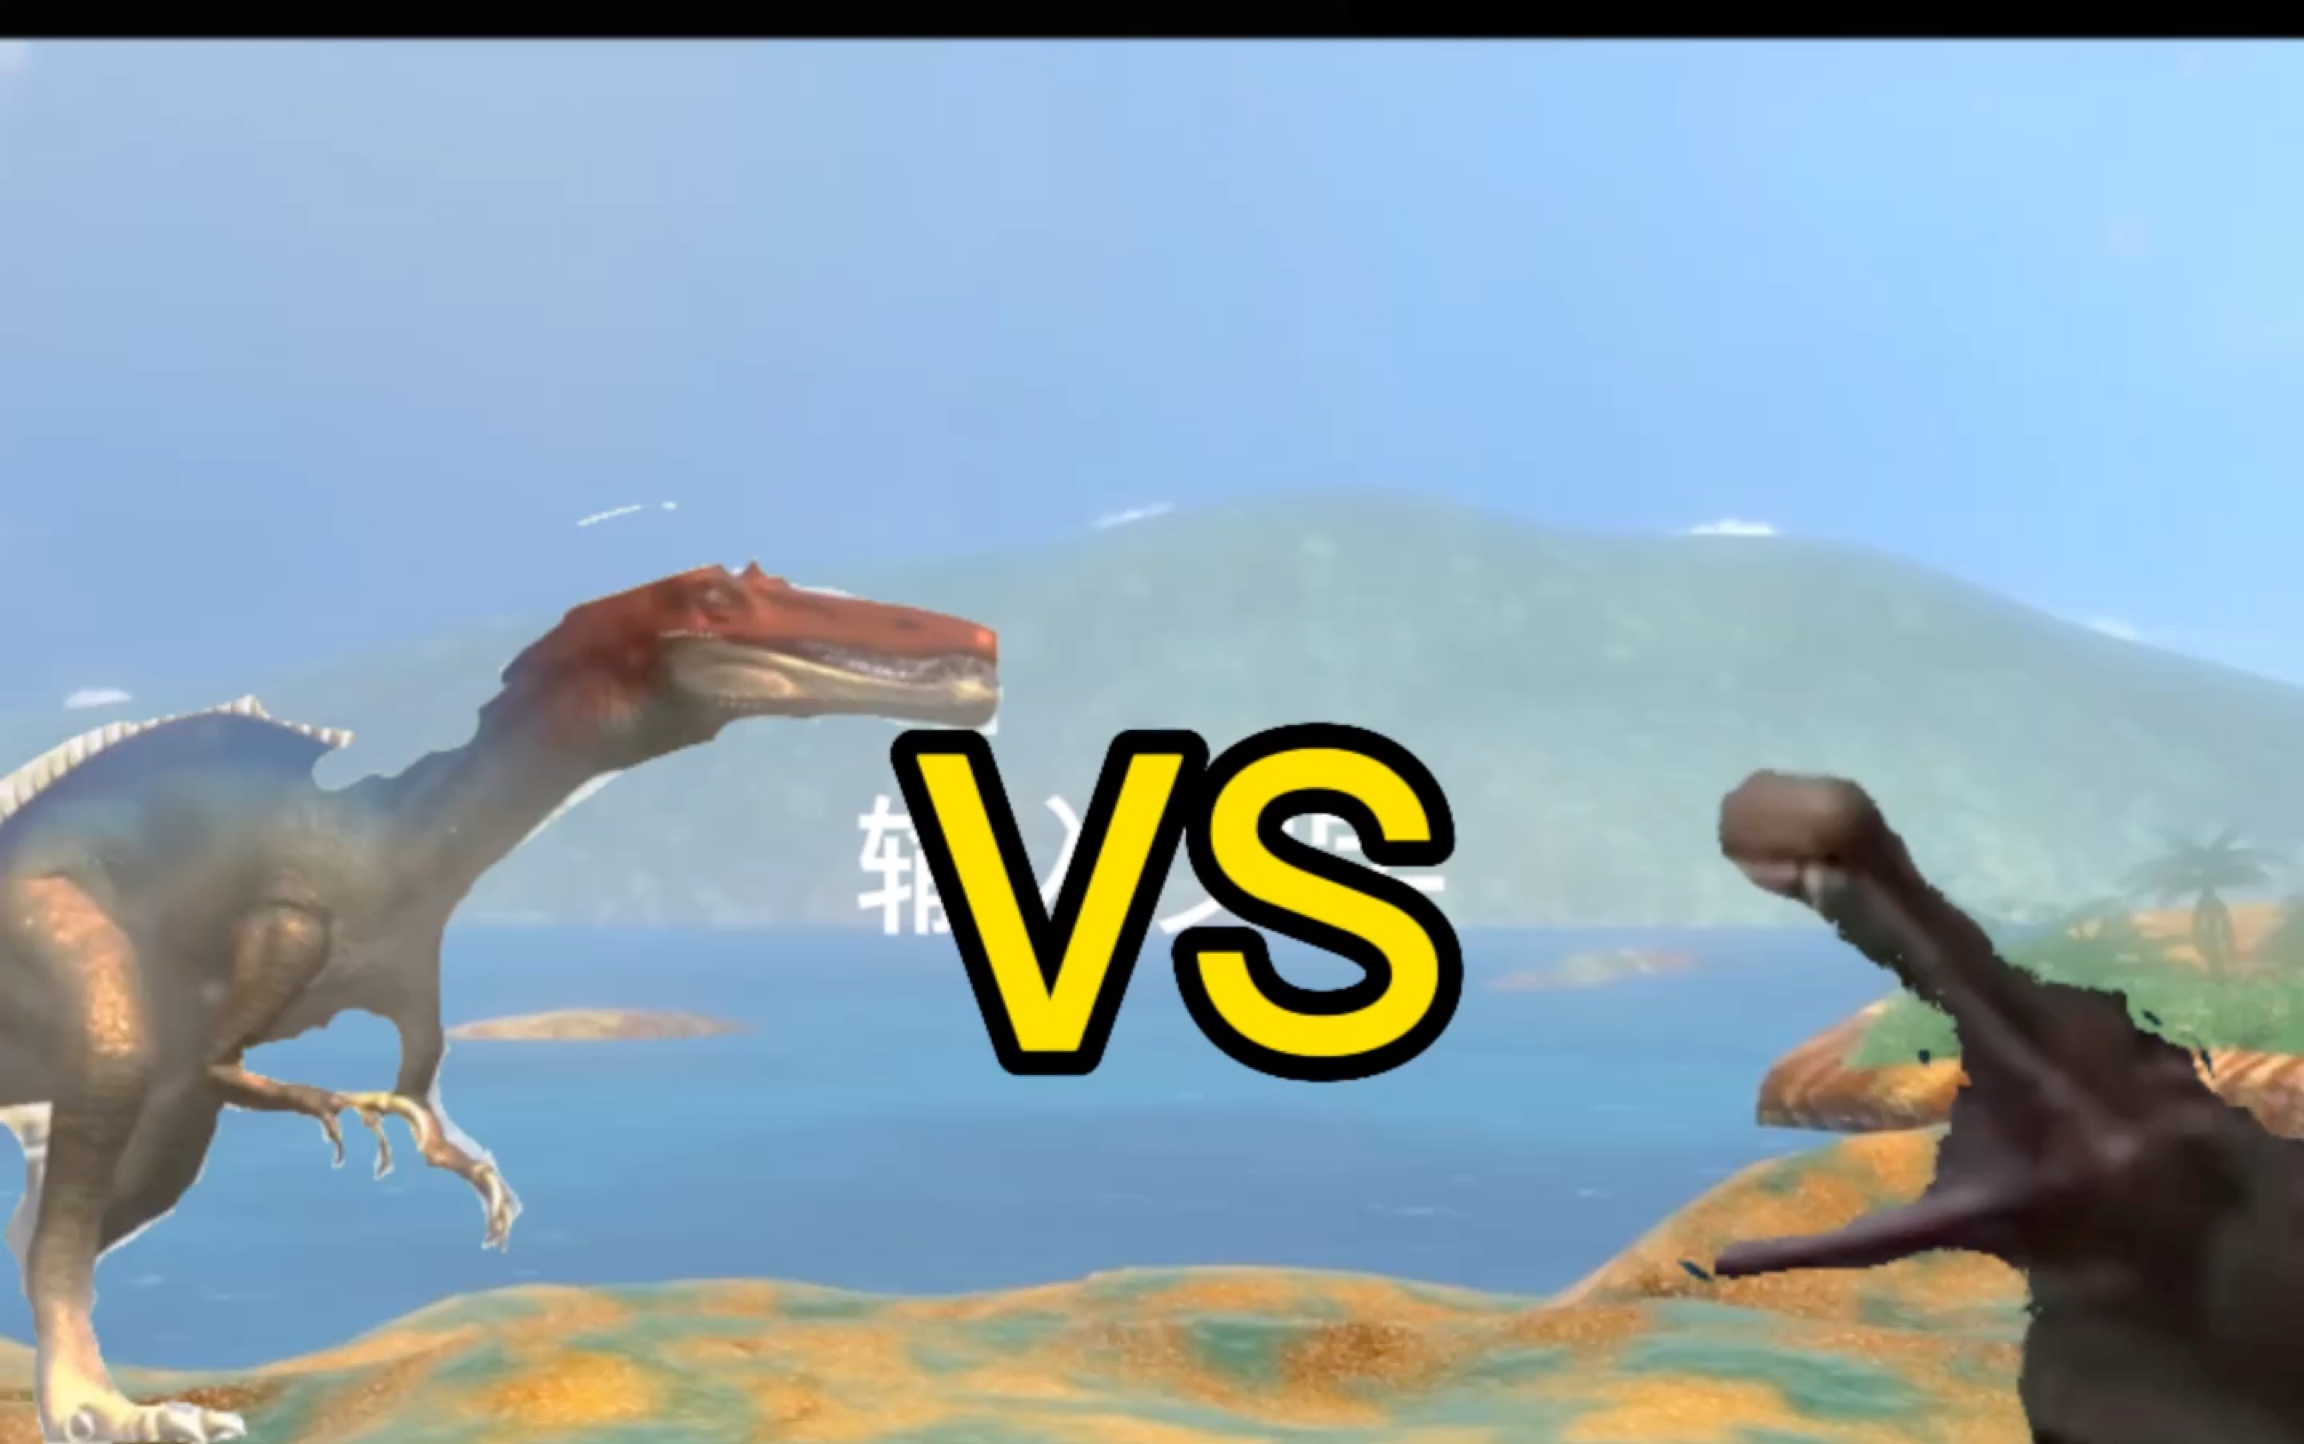 霸王龙vs帝王鳄图片